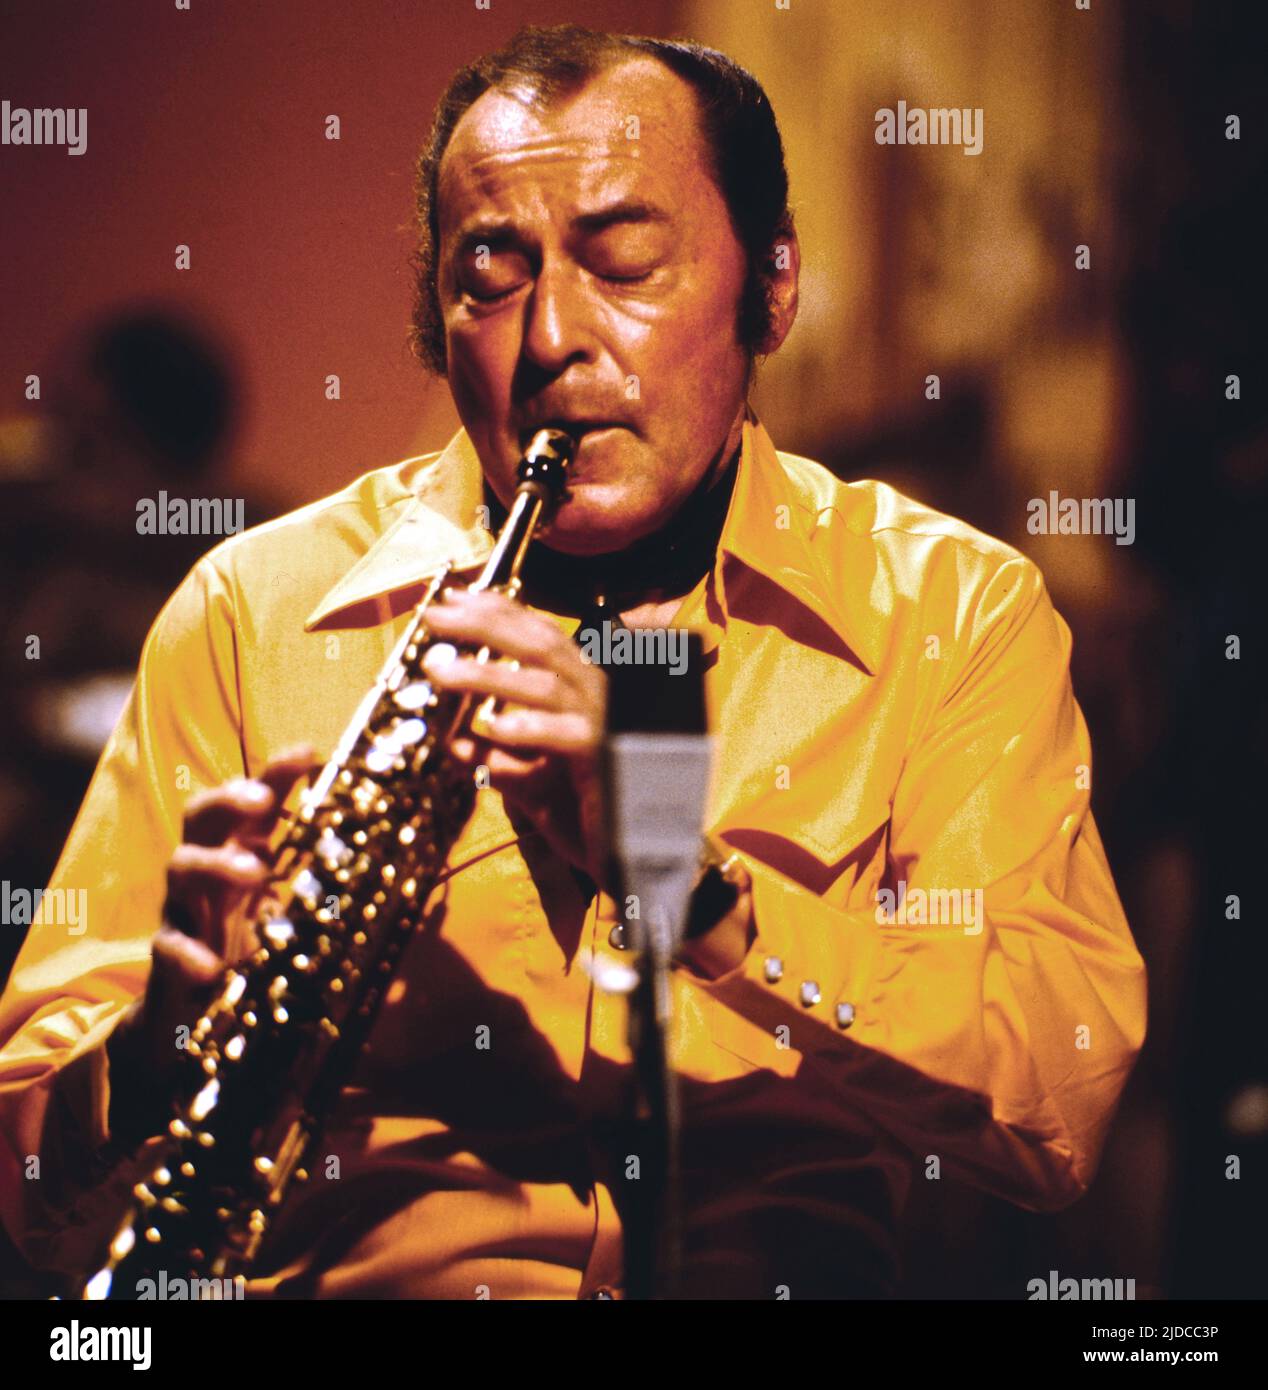 Woody Herman, amerikanischer Jazz-Klarinettist und Bandleader, hier bei einem Auftritt, circa 1976. Woody Herman, American Jazz clarinetist and bandleader, shown here performing, circa 1976. Stock Photo